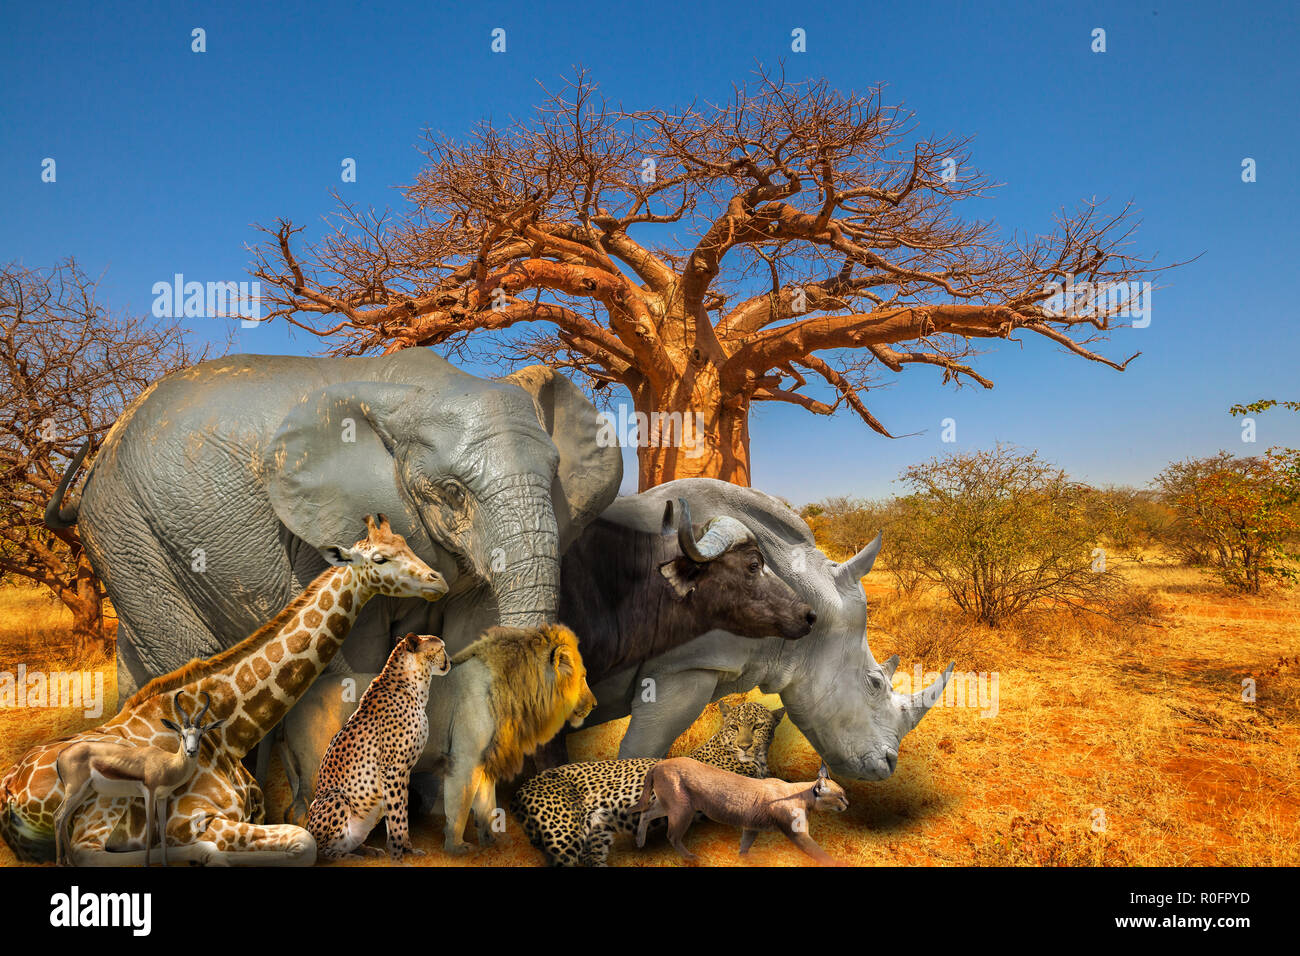 Baobab à Musina réserve naturelle, l'une des plus importantes collections de baobabs en Afrique du Sud, avec cinq grands animaux sauvages et sur paysage de savane africaine. Scène safari africain. Papier peint fond Banque D'Images